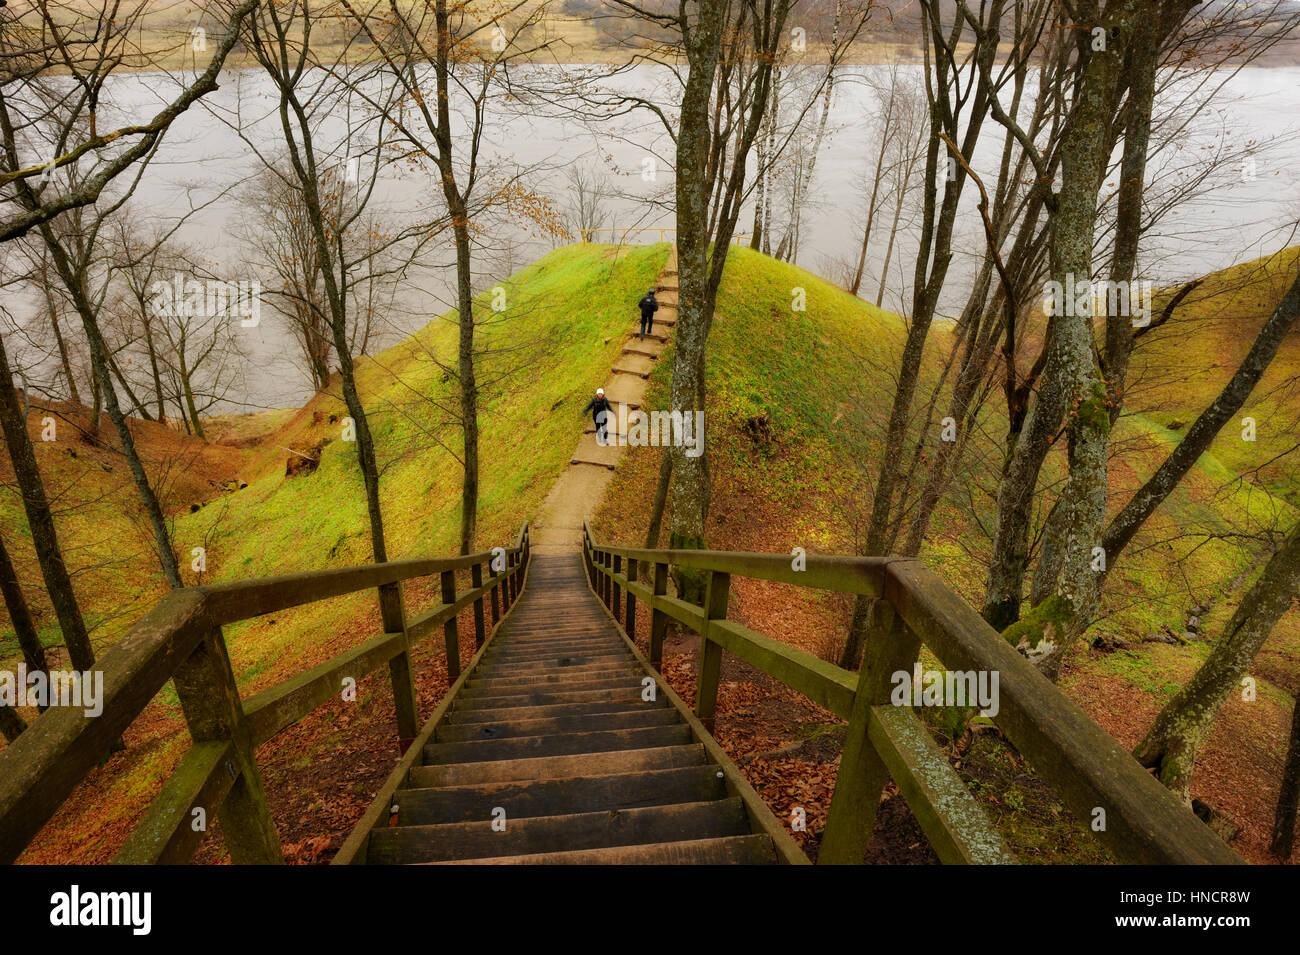 Landschaften in Litauen,Sudargas. Stock Photo